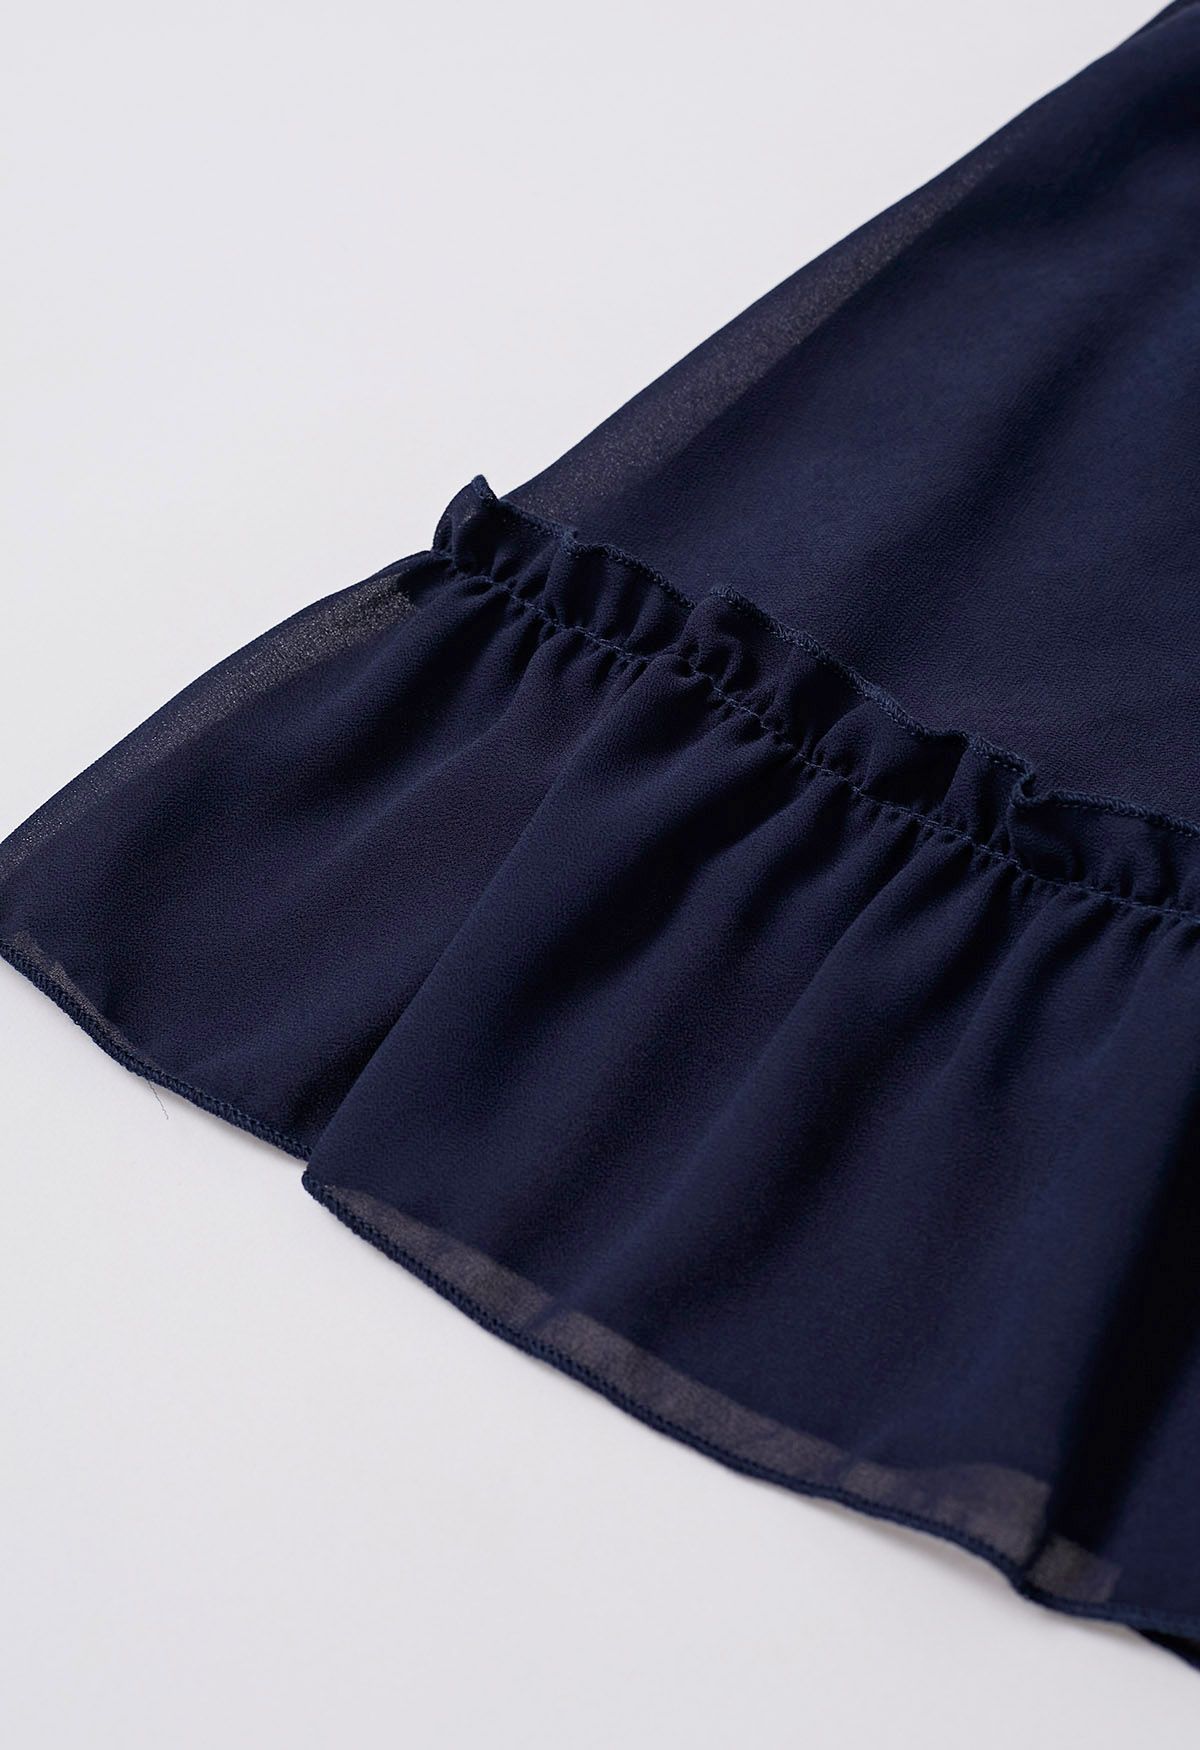 فستان من الشيفون ذو رقبة وهمية وخصر مكشكش باللون الأزرق الداكن